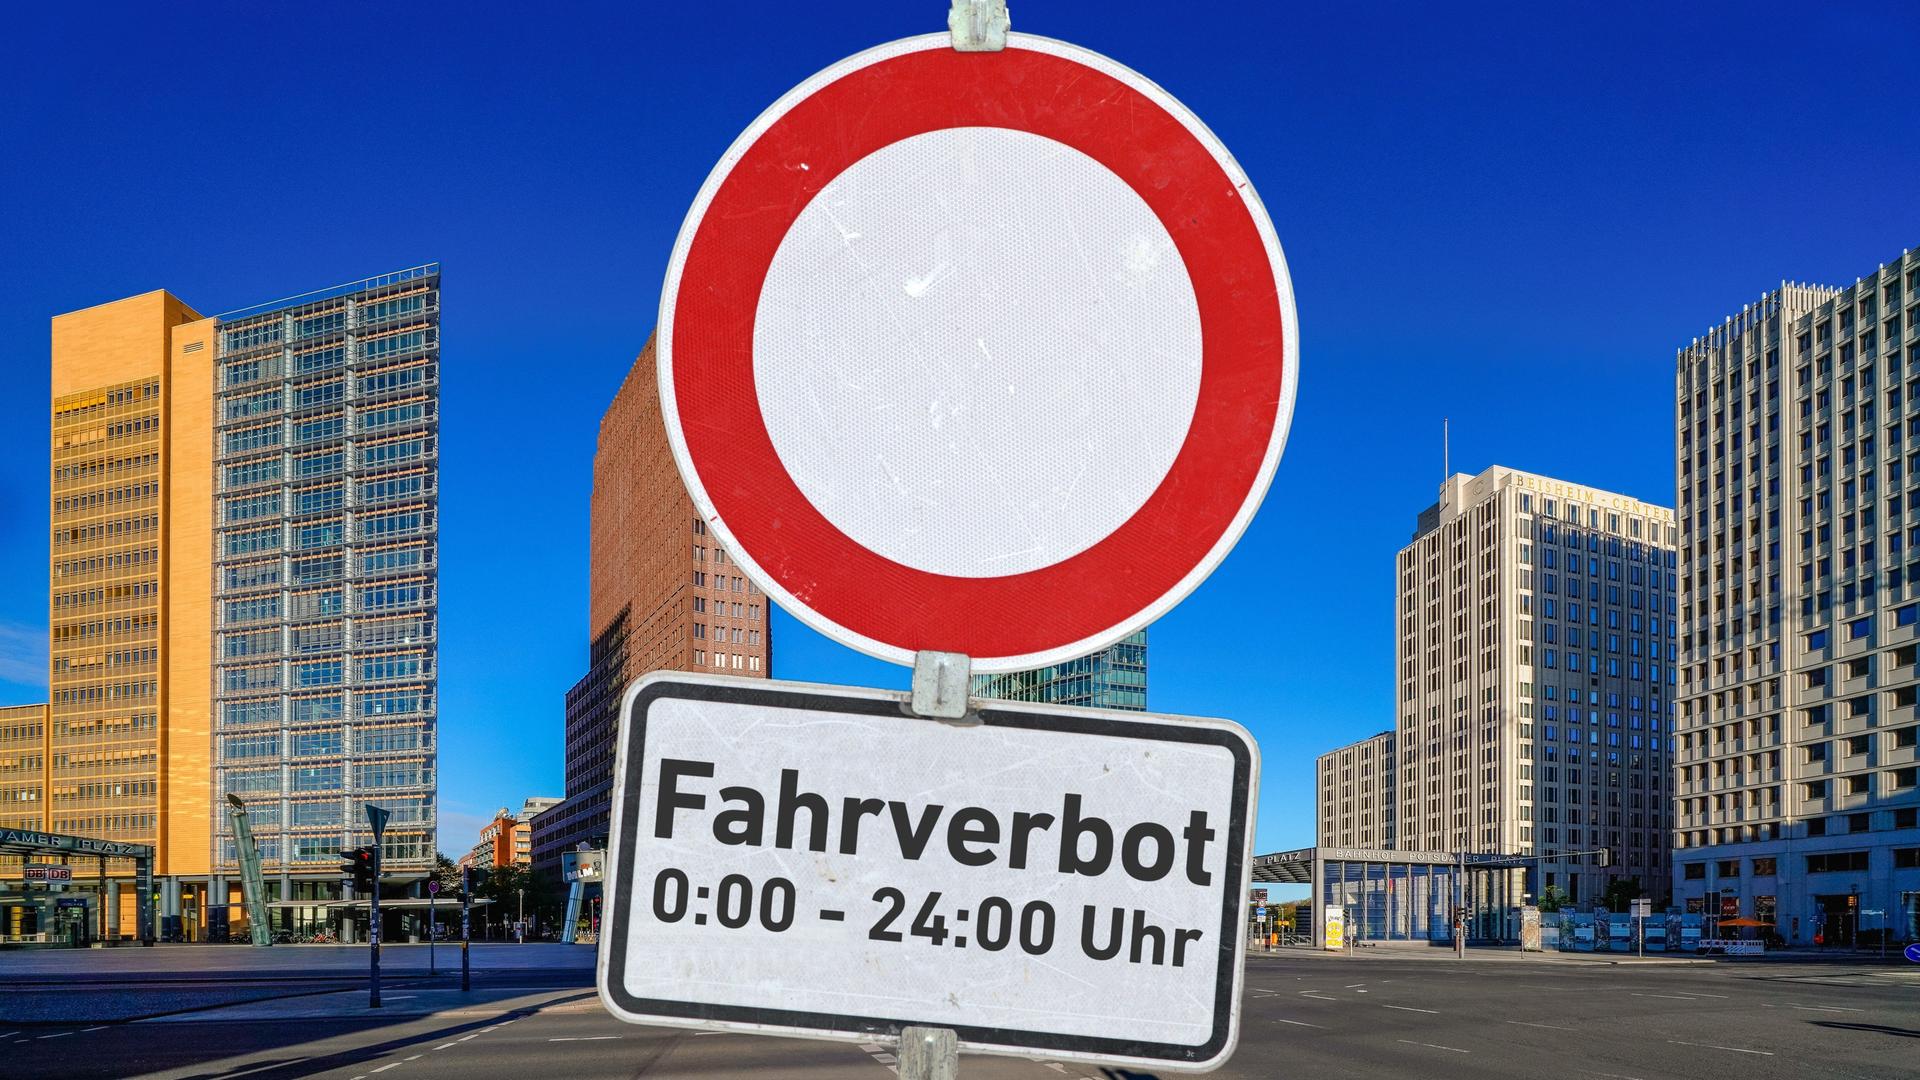 Ein Verkehrszeichen mit der Aufschrift: "Fahrverbot 0:00 - 24:00 Uhr" an einem Schildermast vor dem autofreien Potsdamer Platz in Berlin.